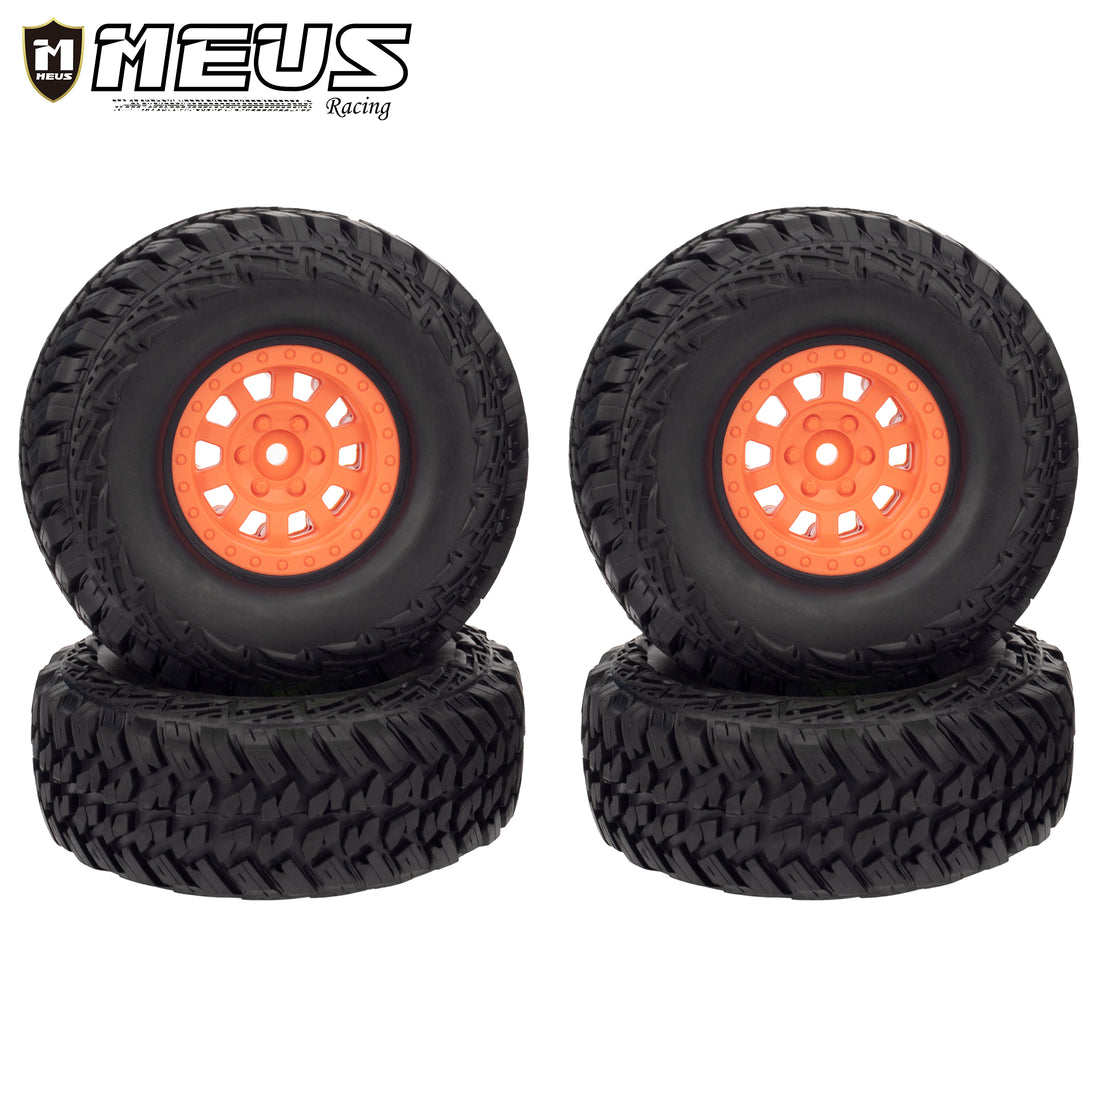 Meus Racing 1.9" Plastic Beadlock Wheels/Rubber Tires